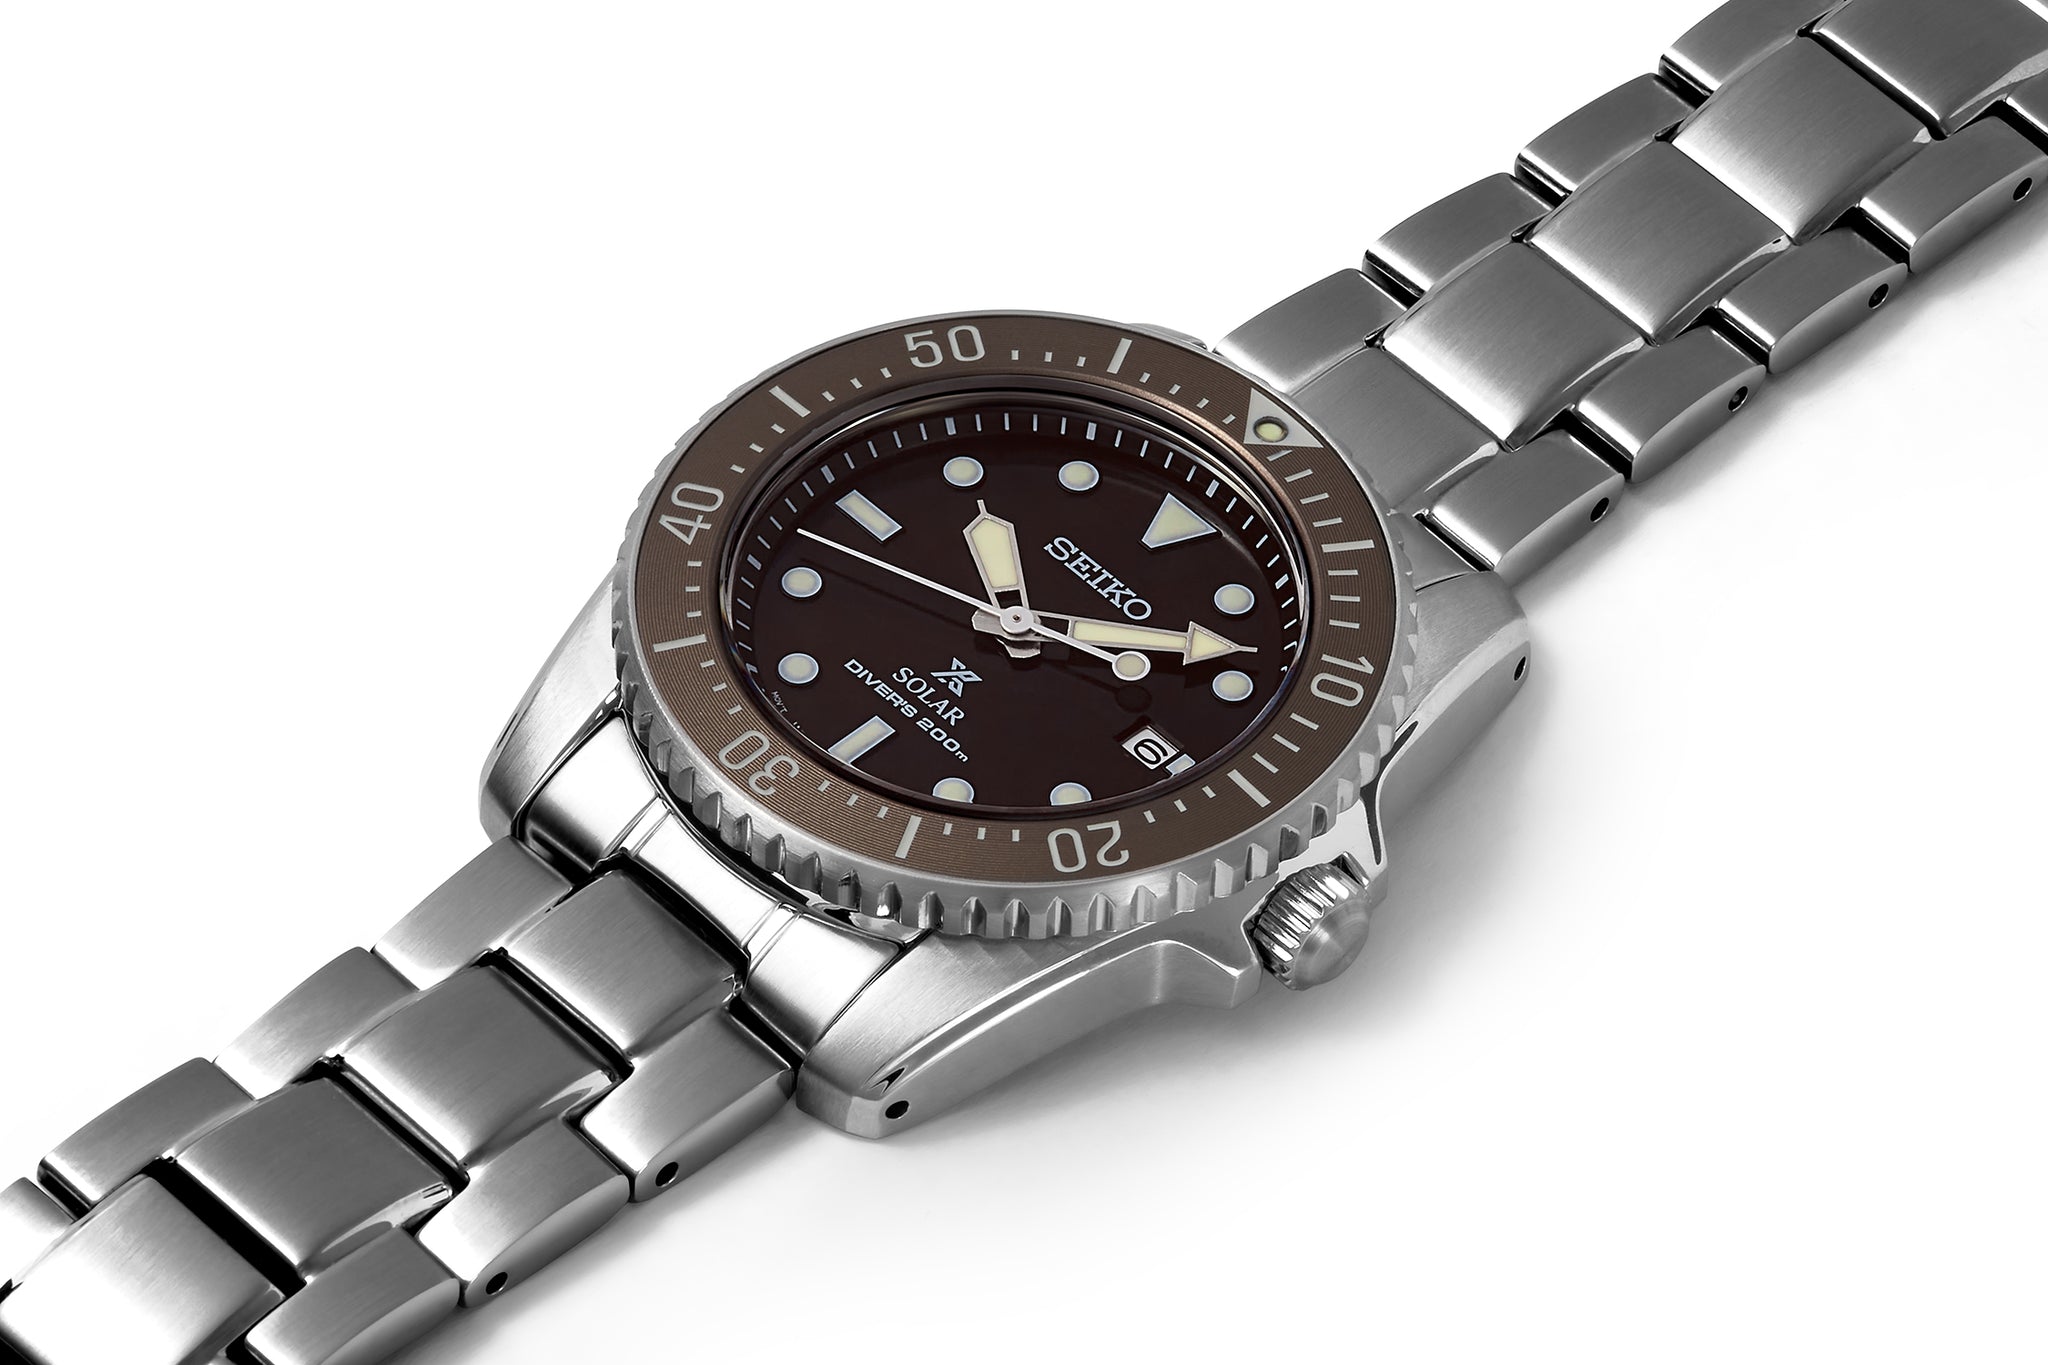 Seiko Prospex Solar Dive Watch SNE571P1